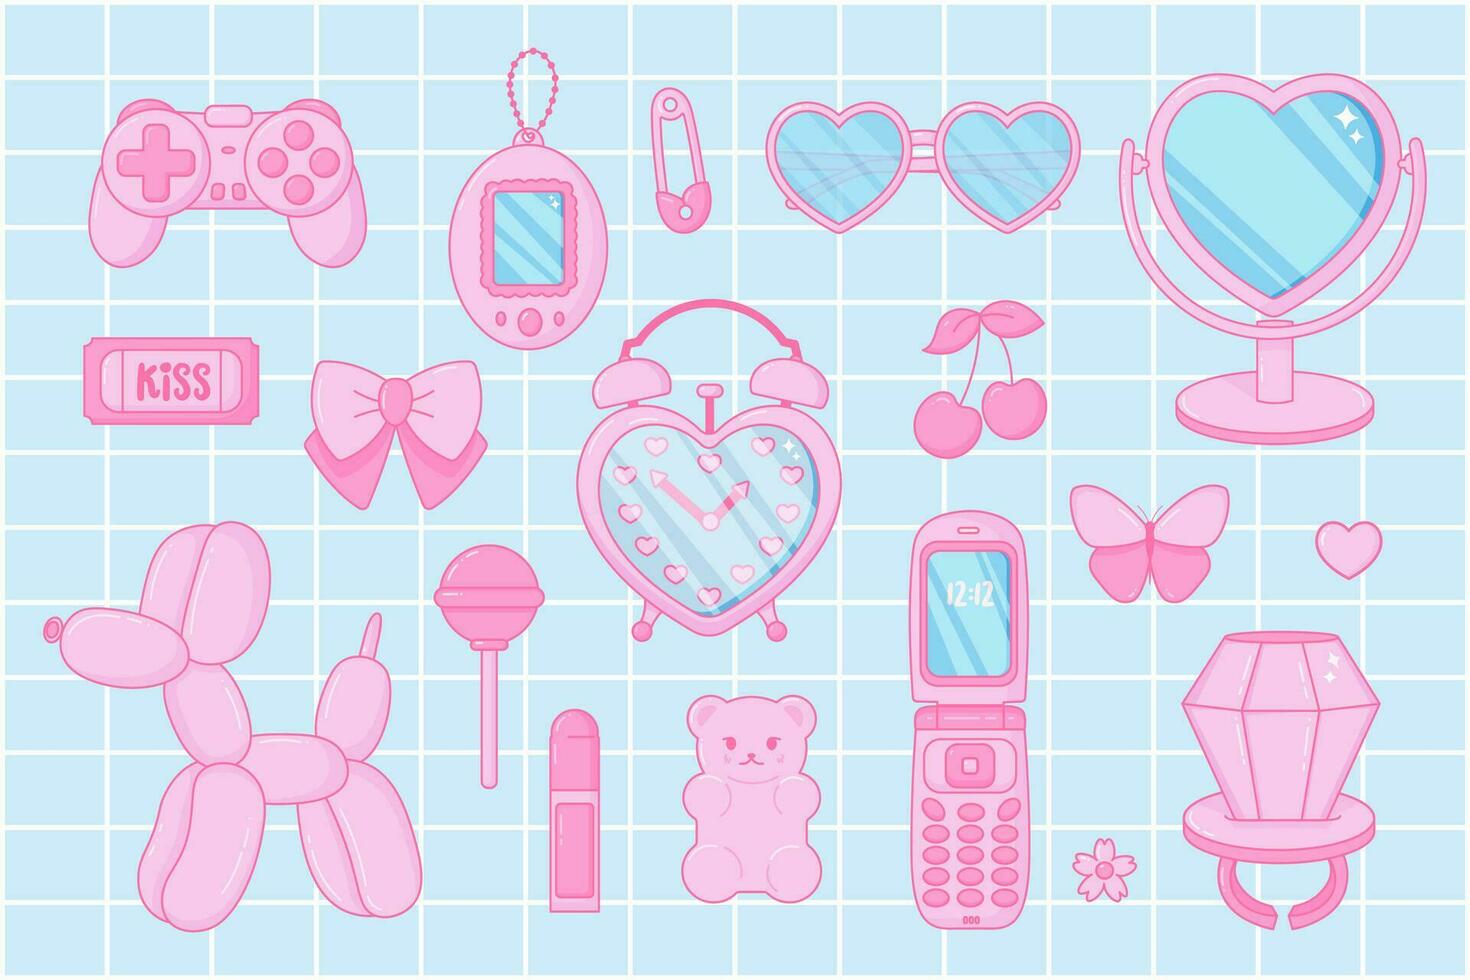 schattig set. roze vrouwen accessoires. kawaii glamour. tiener- meisjesachtig stijl. nostalgisch roze kern jaren 2000 stijl. lippenstift, bril, ticket, lolly ring, gelei bears kleverig, omdraaien telefoon. vector